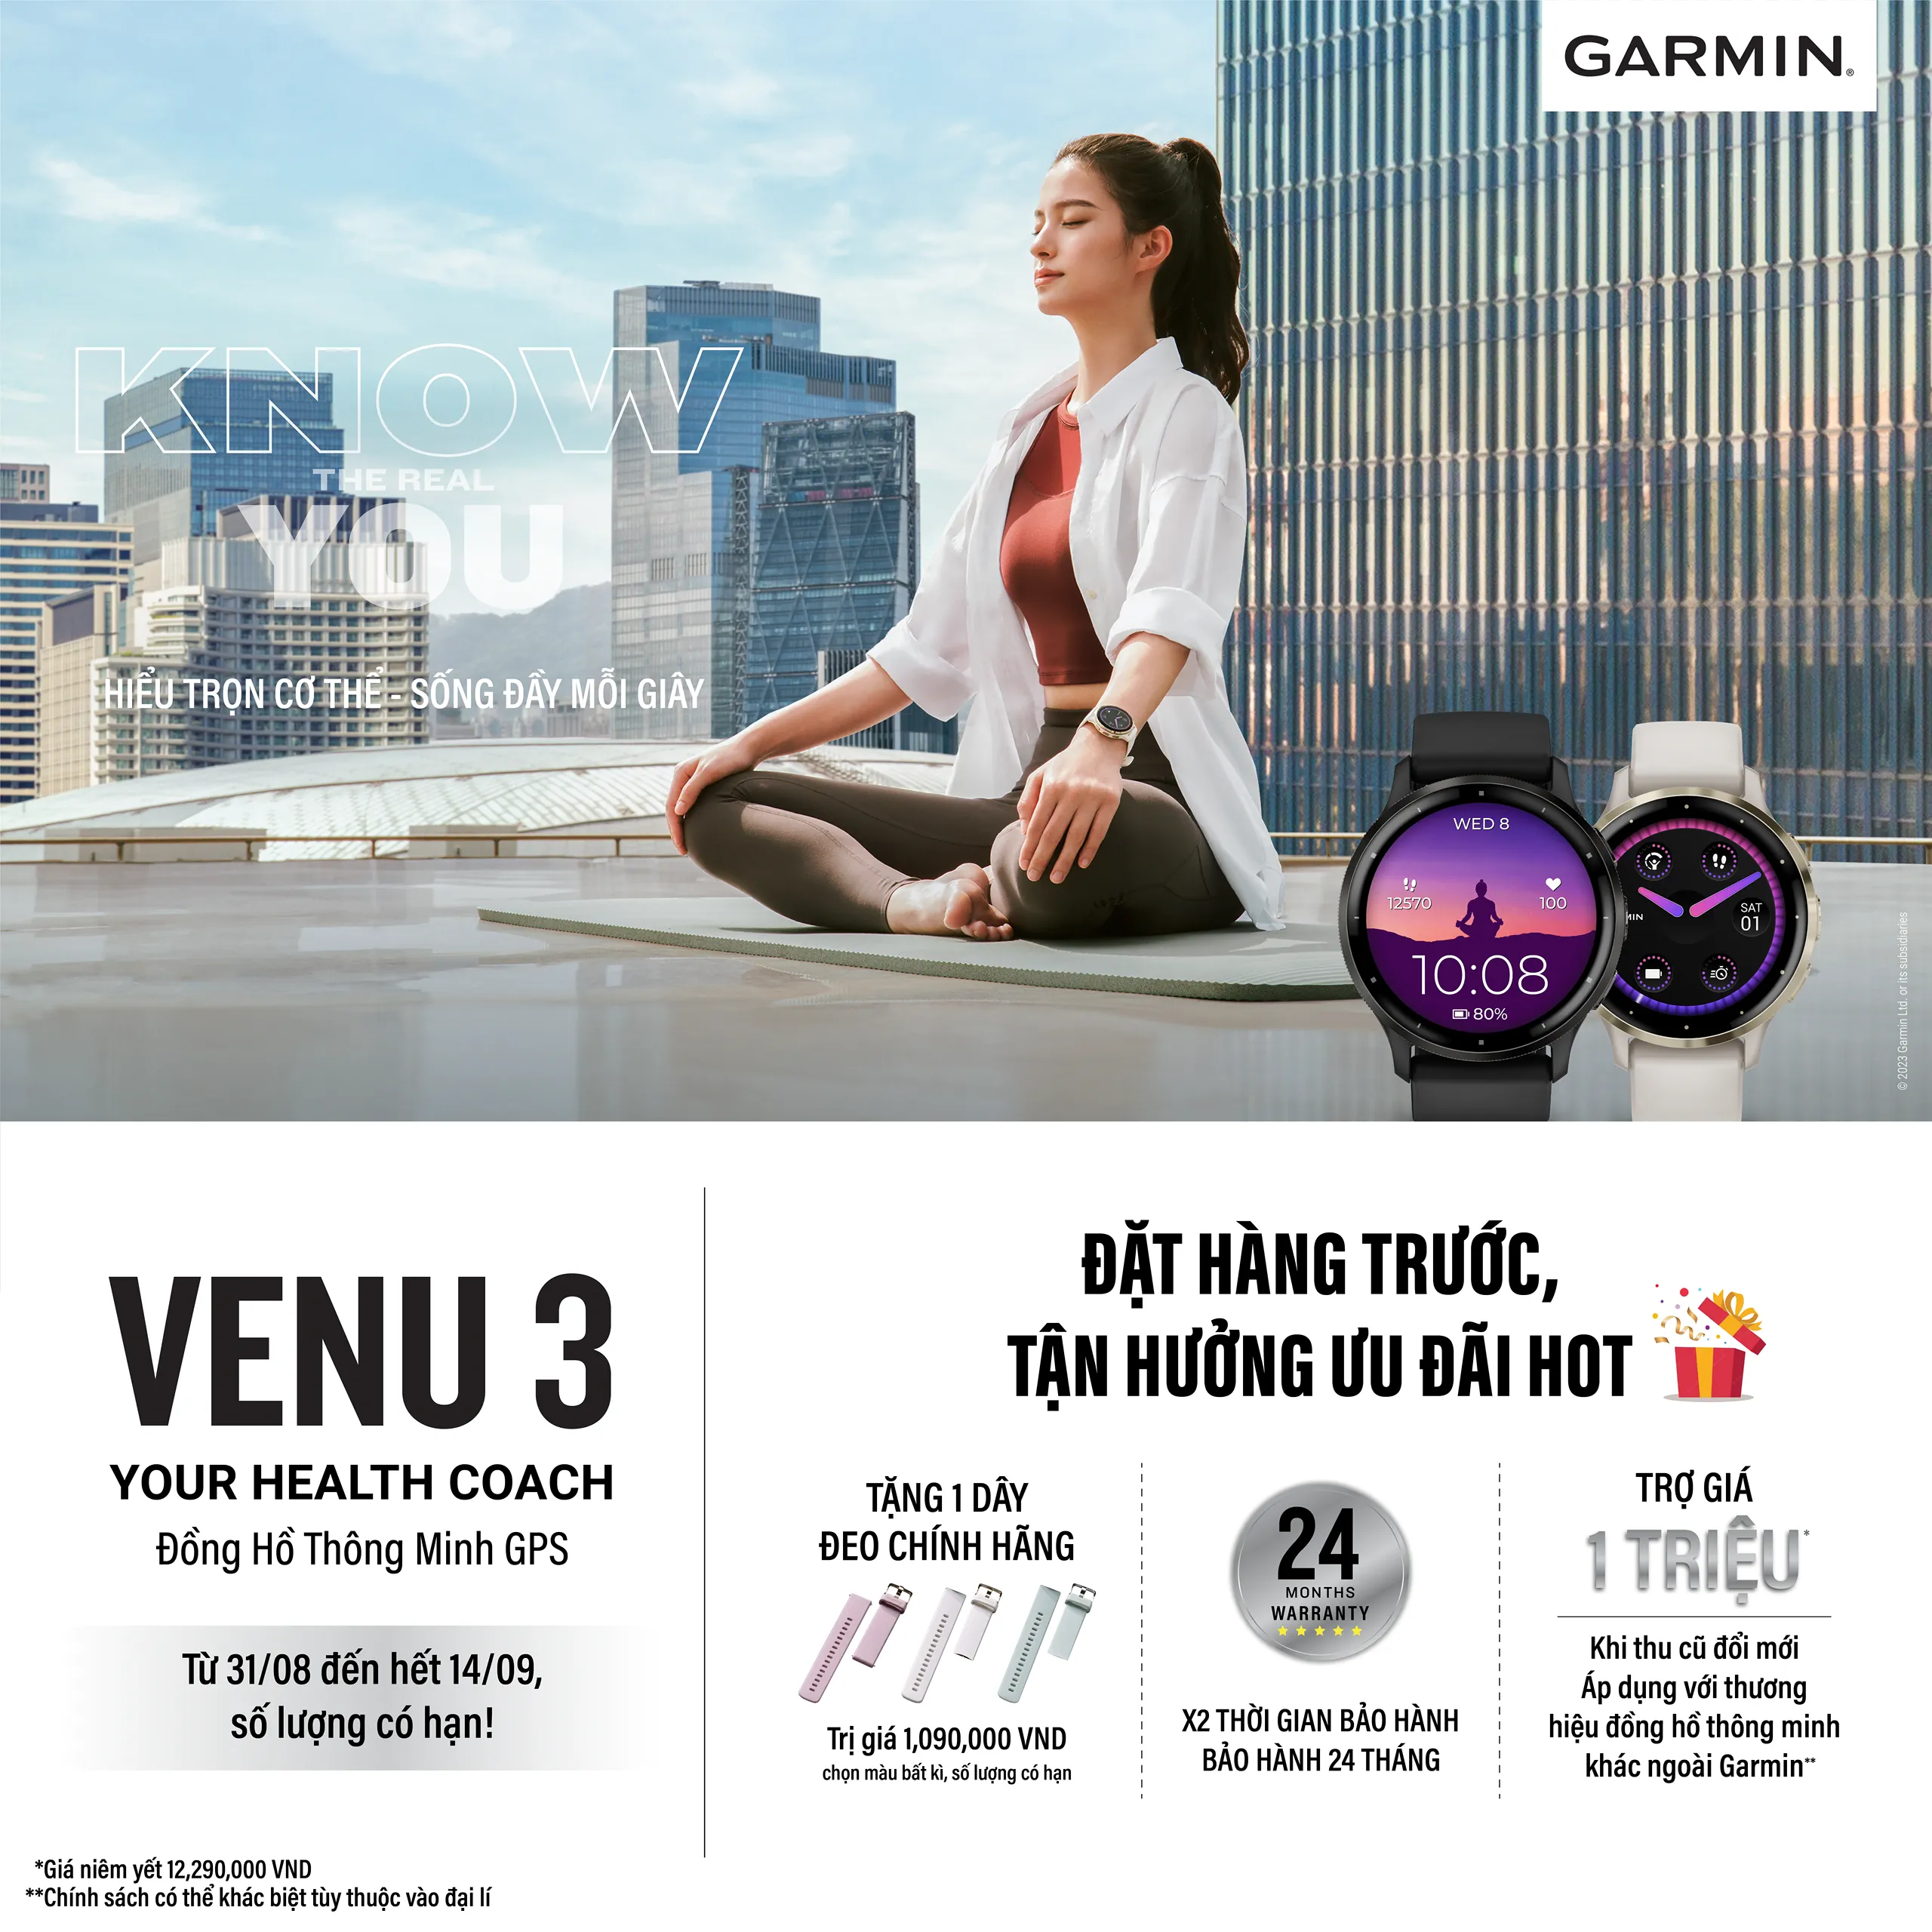 Garmin Venu 3 ra mắt: Cố vấn sức khỏe toàn diện, đồng hành cùng bạn trên mọi hành trình